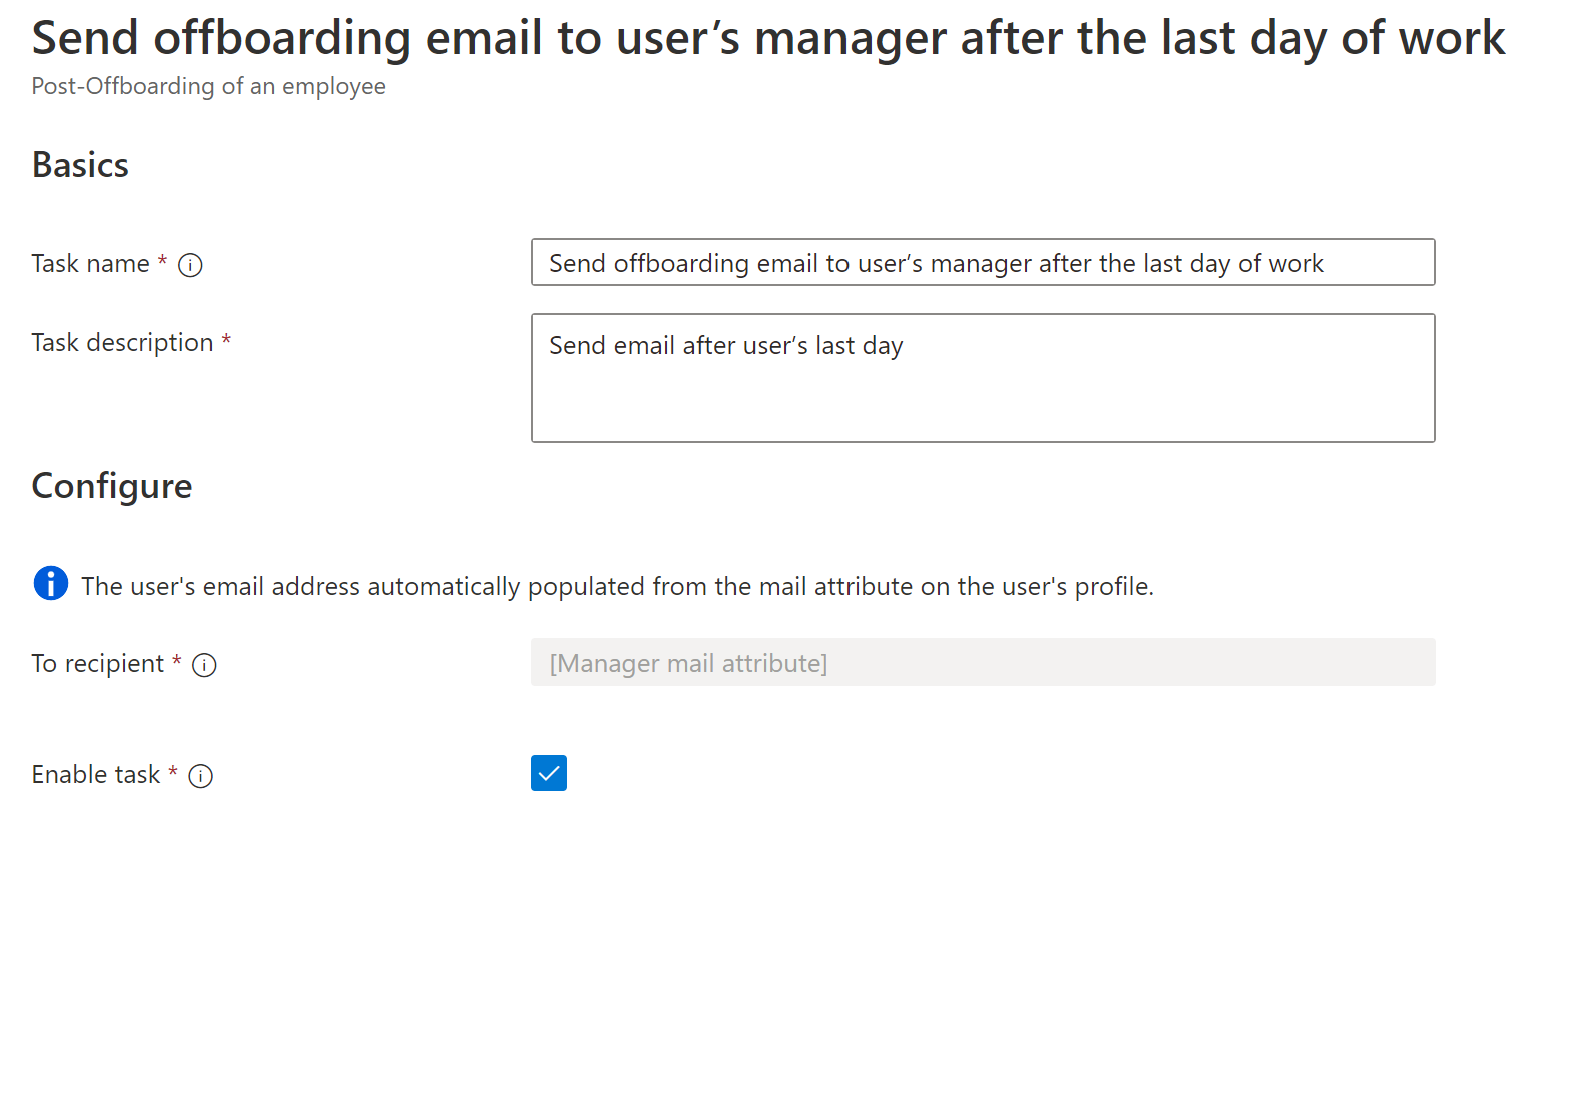 工作流任务的屏幕截图：在用户的最后一天之后向其经理发送离职电子邮件。